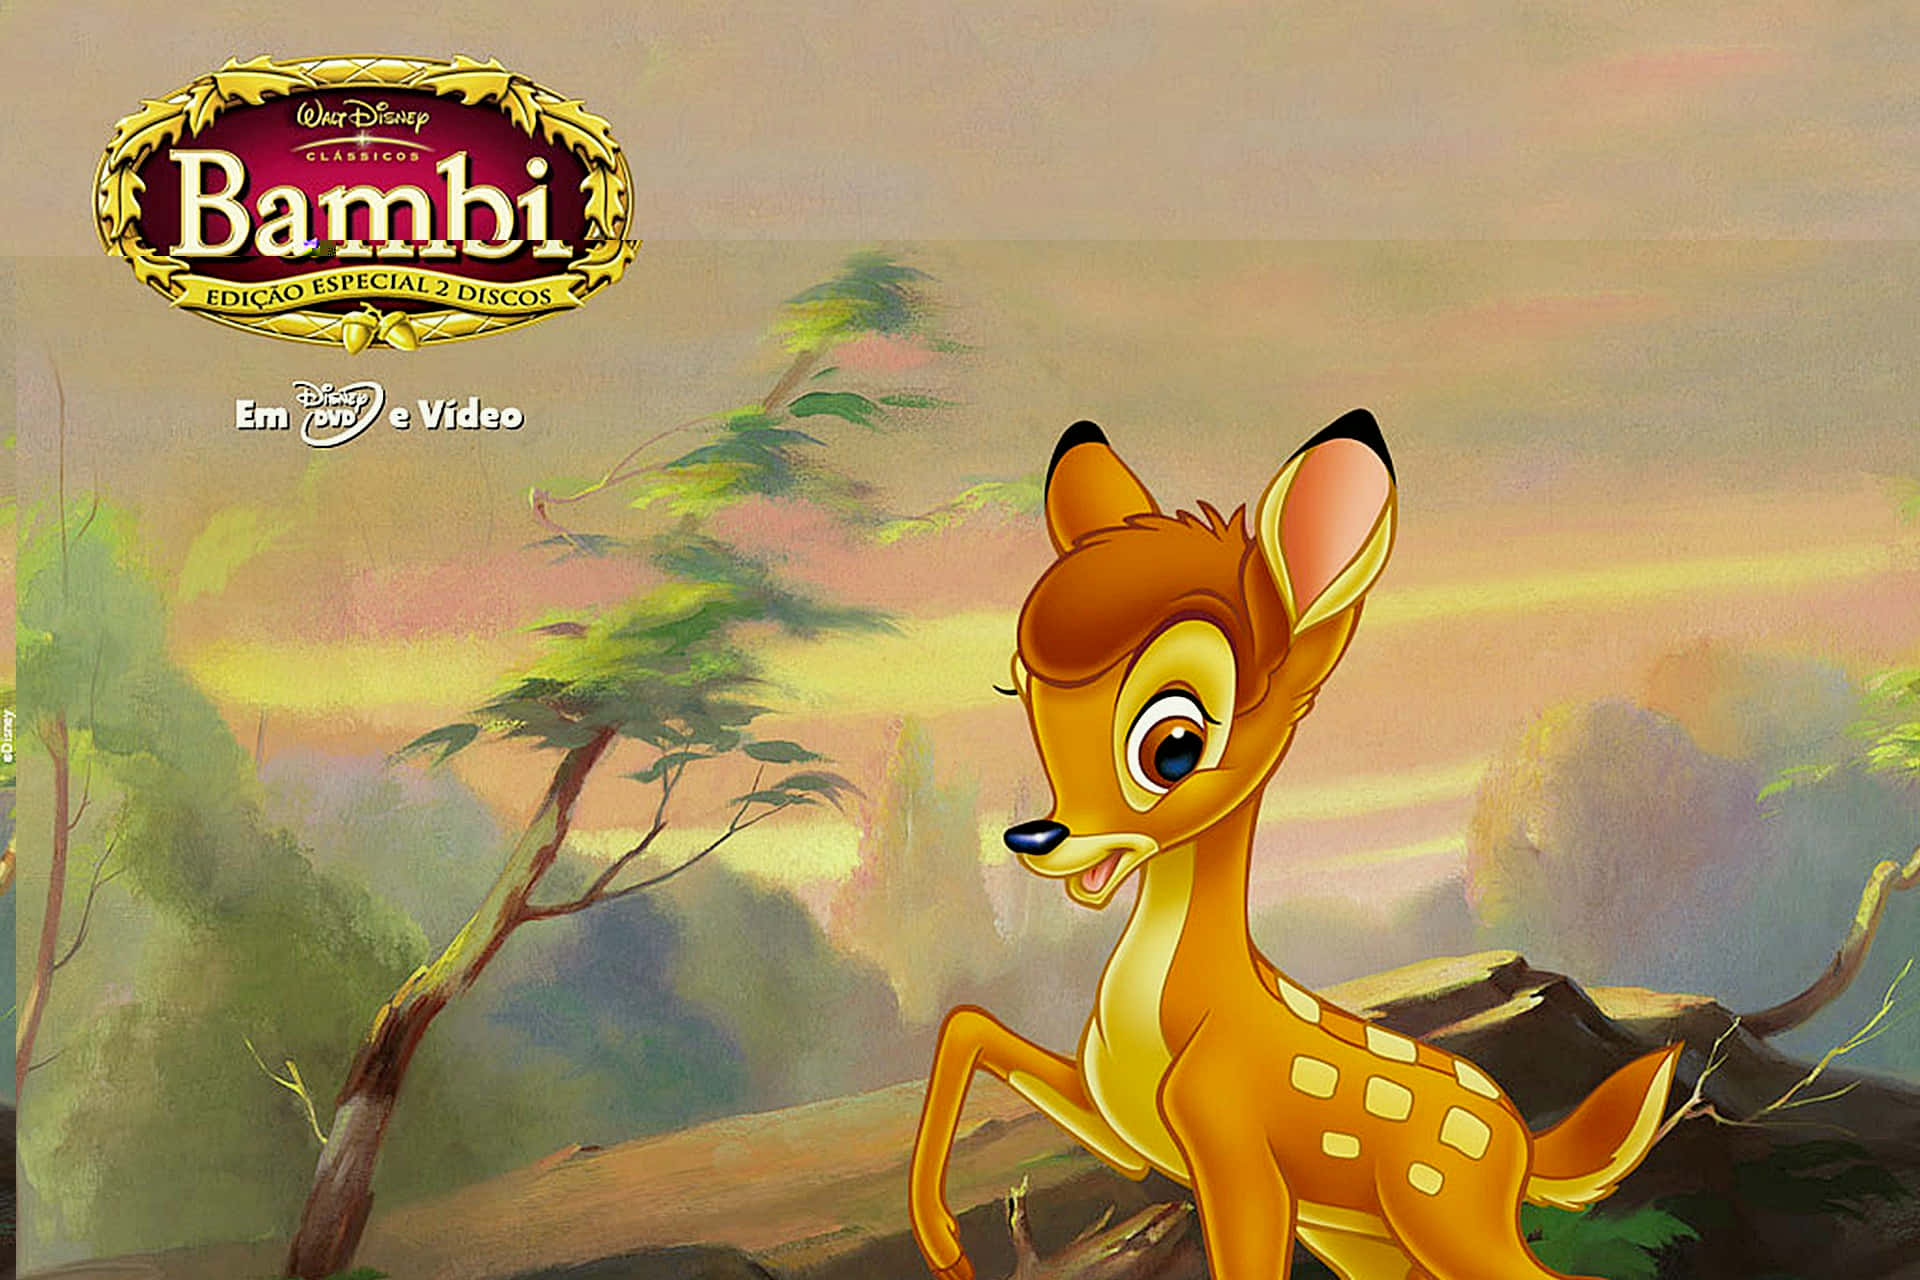 Bambi,der Geliebte Animierte Hirsch Von Disney, Schaut Voller Hoffnung In Die Welt.